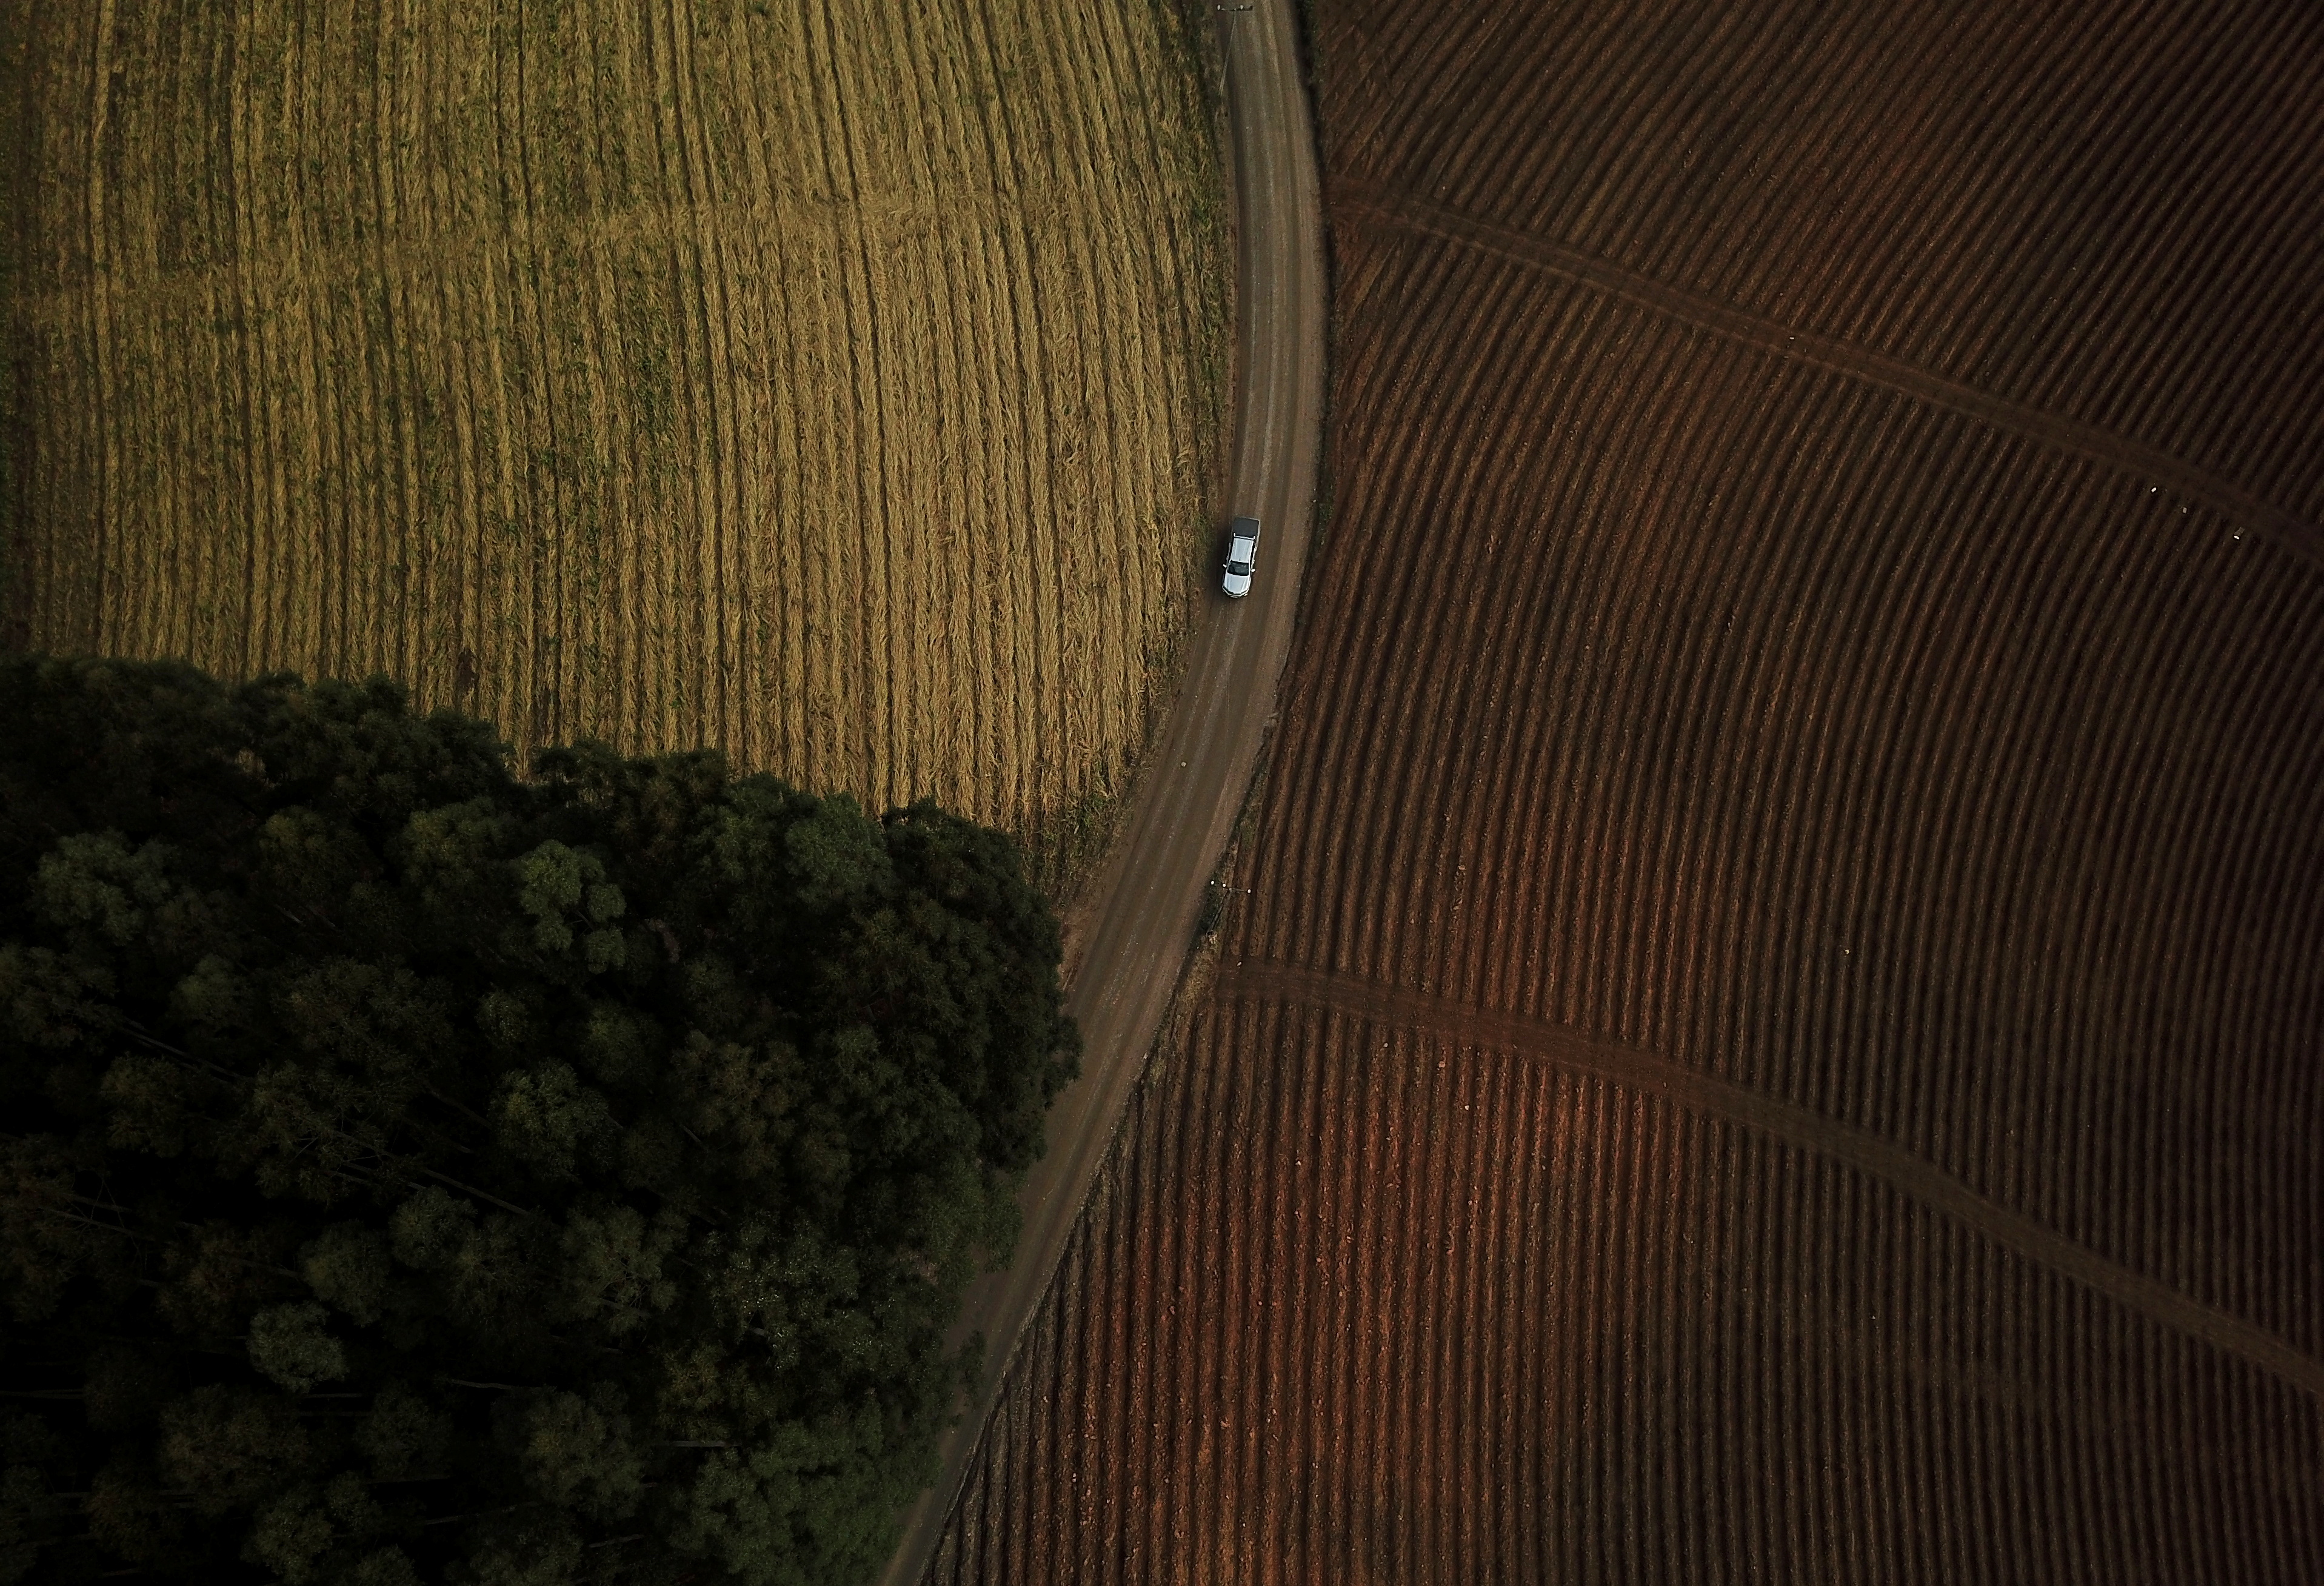 Foto de archivo: un auto circula junto a una plantación de tabaco en una tierra que el pueblo indígena xokleng reclama como su territorio en Vitor Meireles, estado de Santa Catarina, Brasil, en agosto de 2021 (REUTERS/Amanda Perobelli)